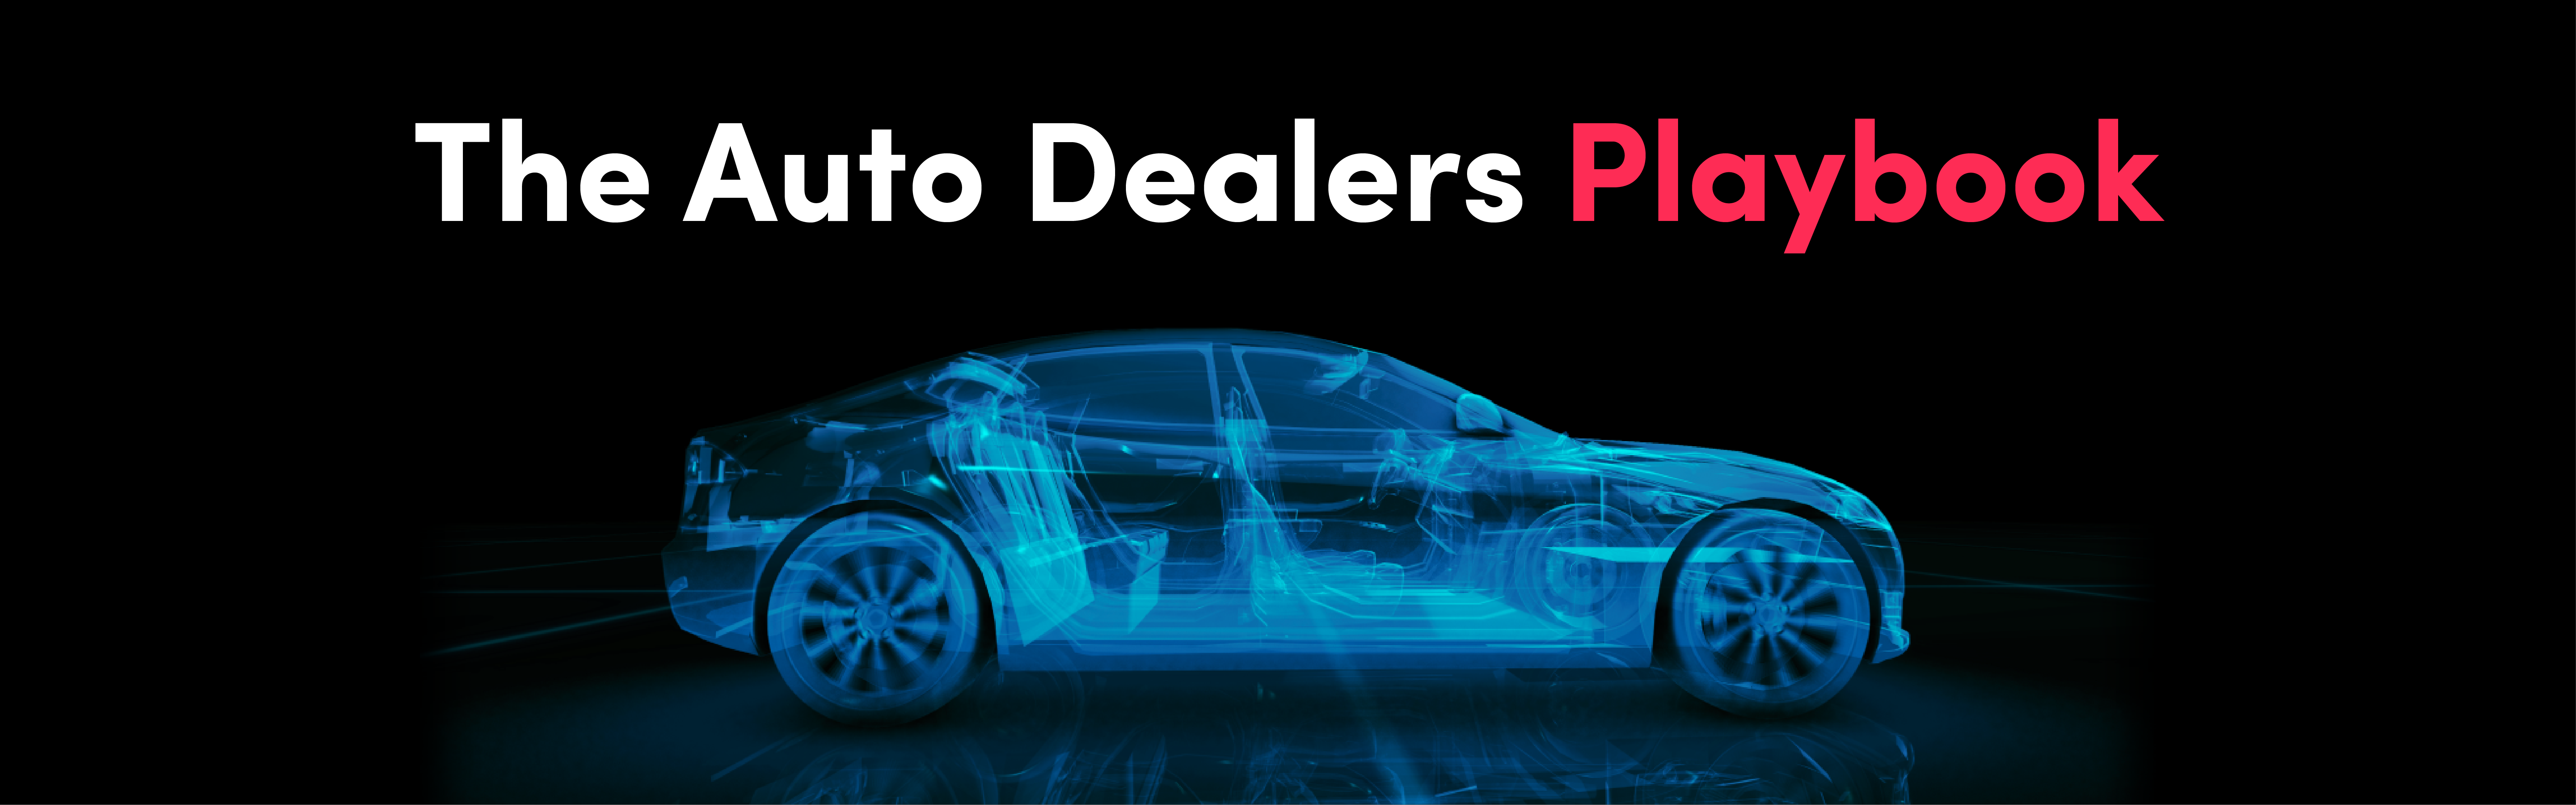 TikTok Auto Dealer Playbook banner